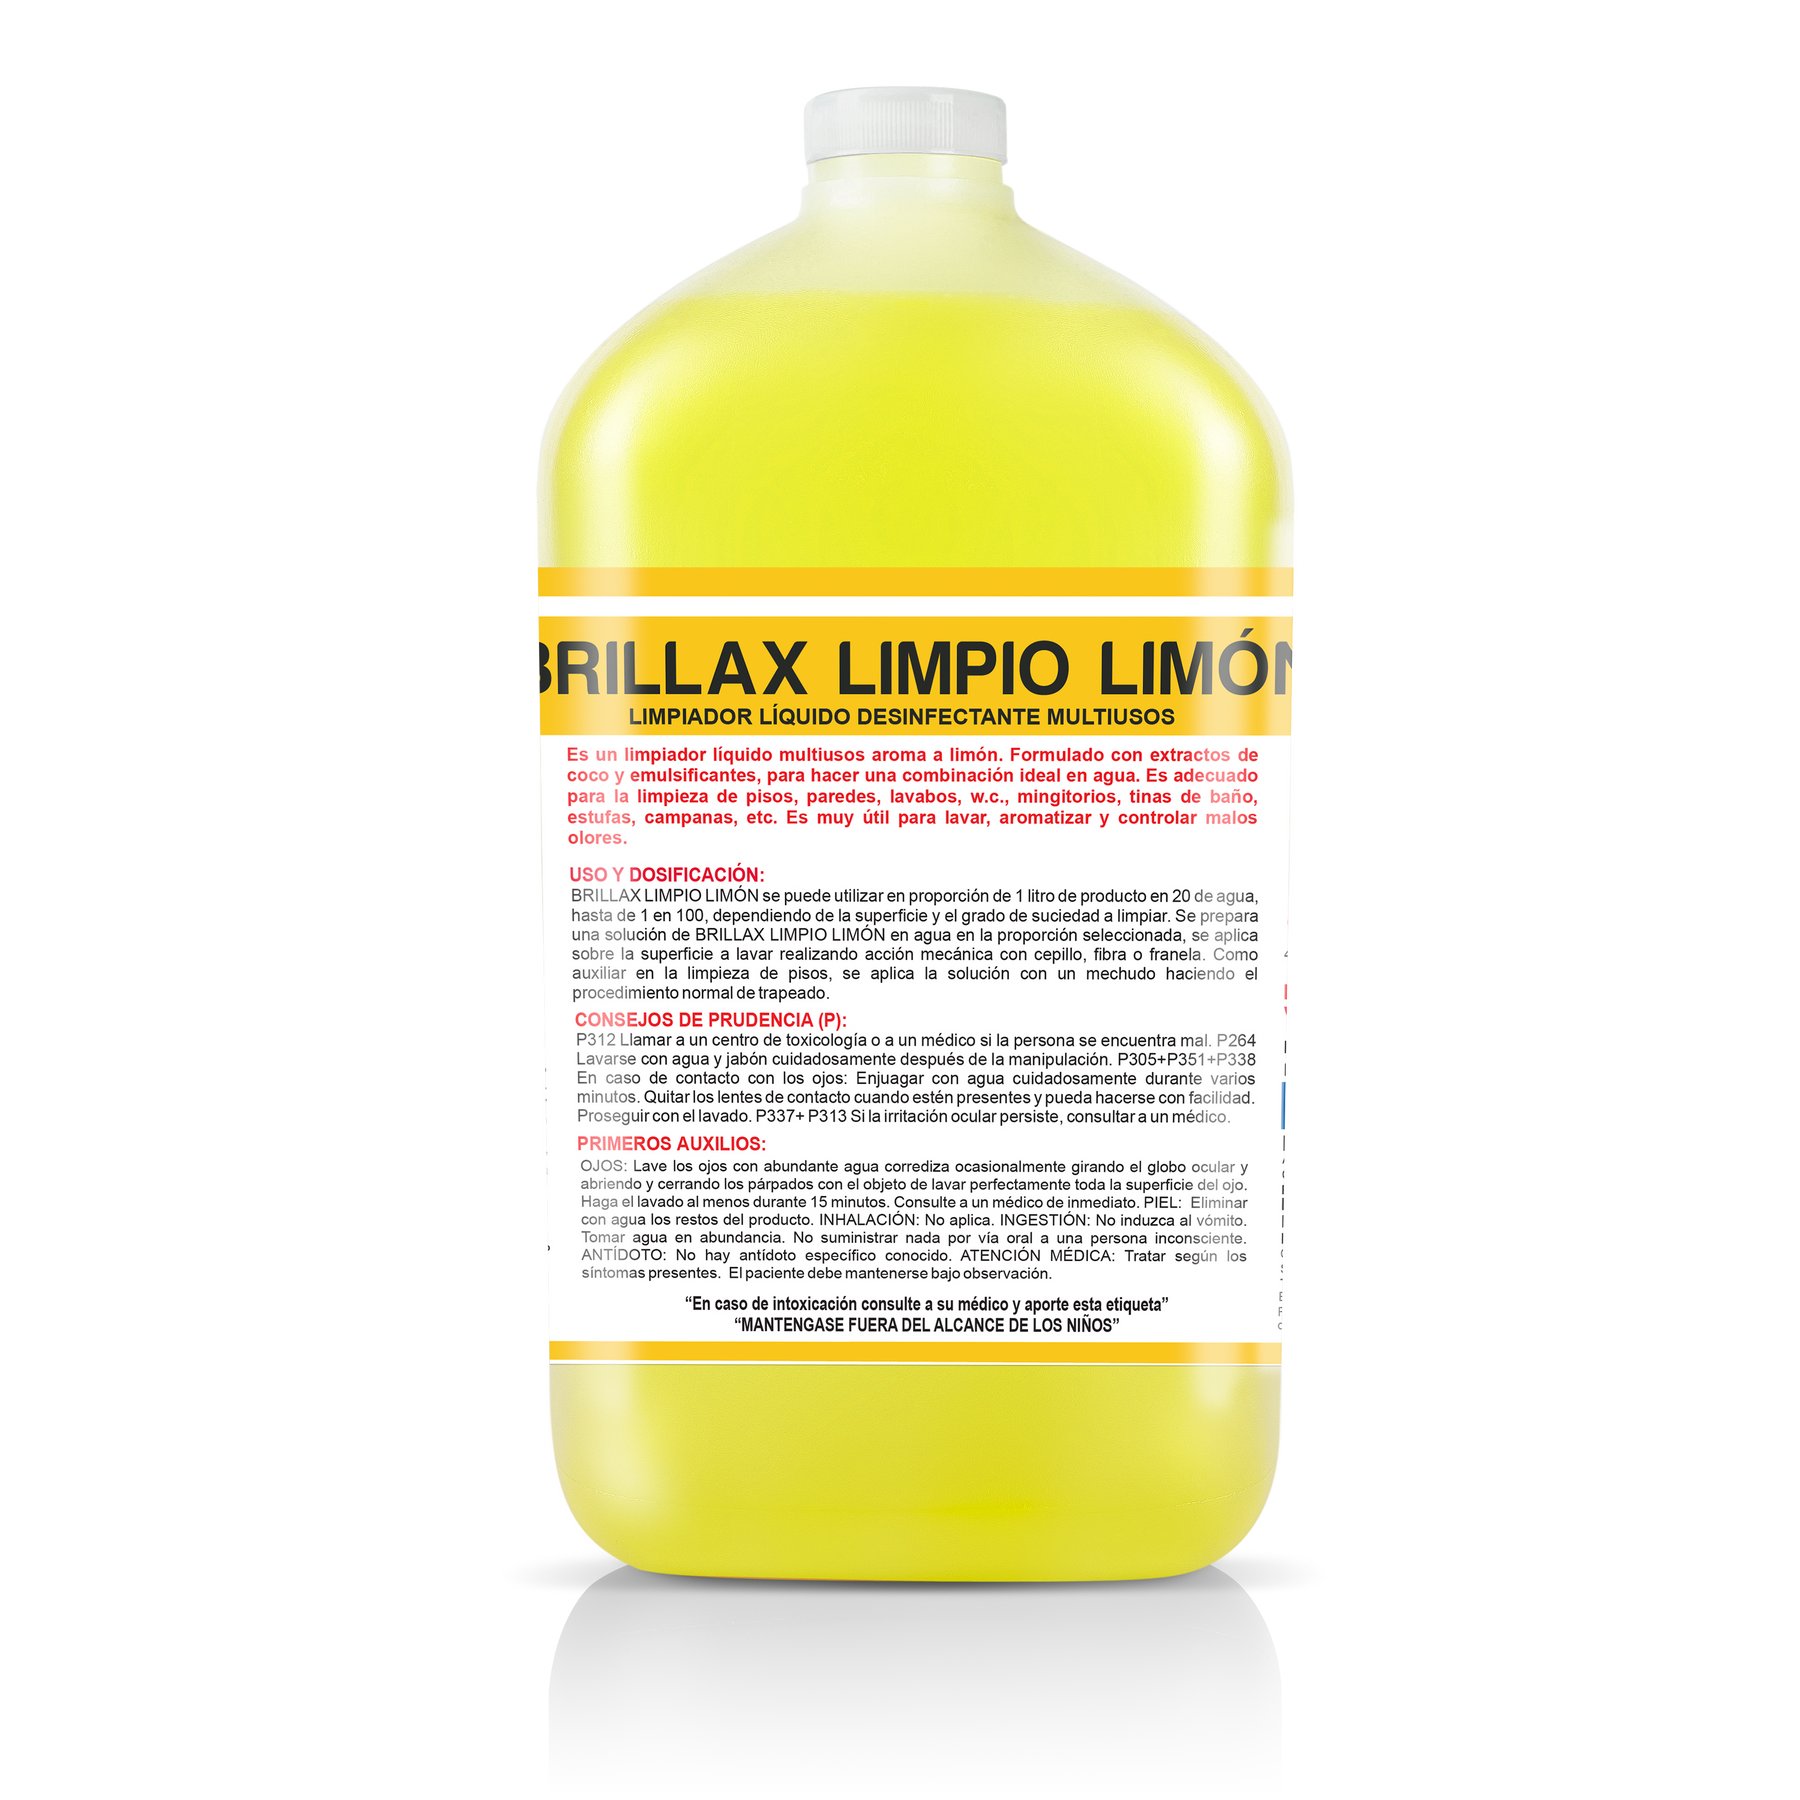 Limpiador Multiusos de Limon, Productos de Limpieza